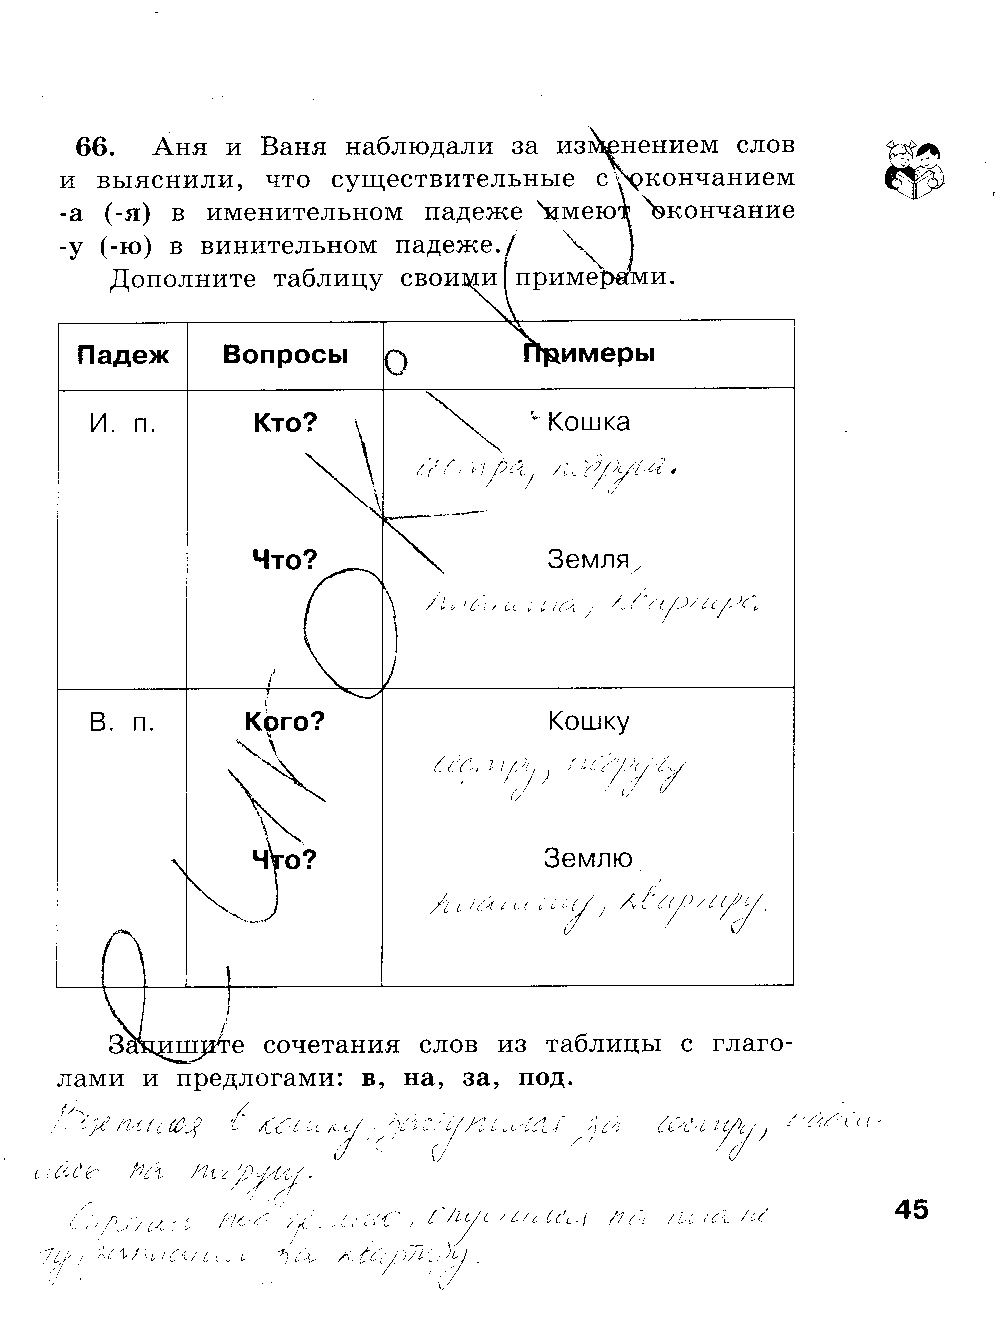 ГДЗ Русский язык 3 класс - стр. 45